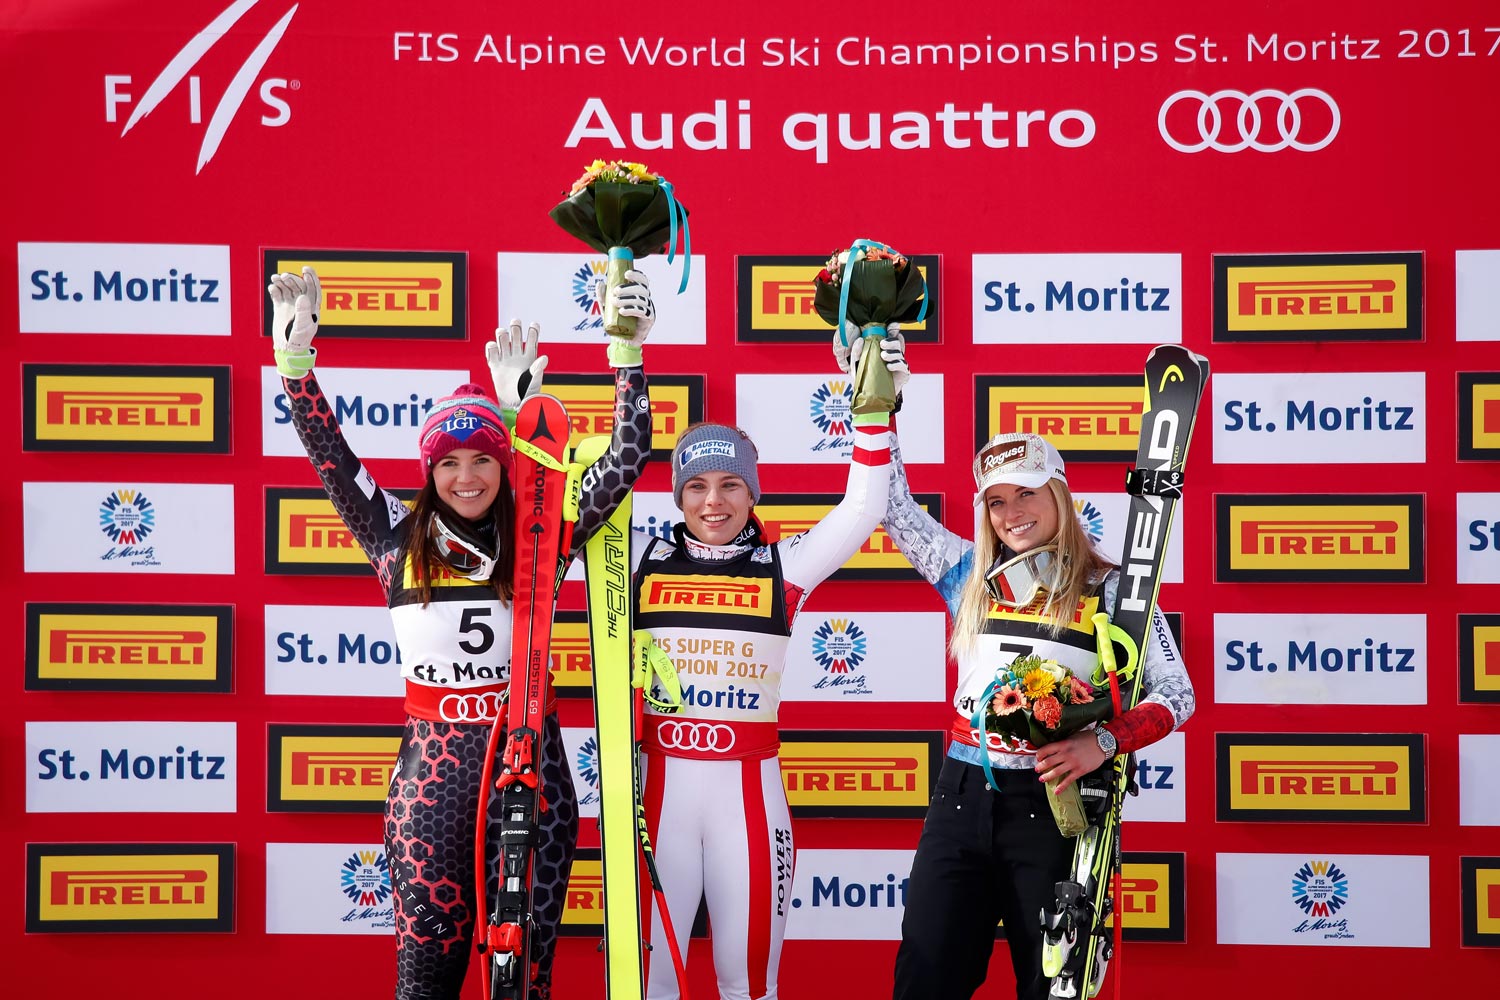 Championnats du monde de ski alpin 2017 St. Moritz, Super G femmes, podium